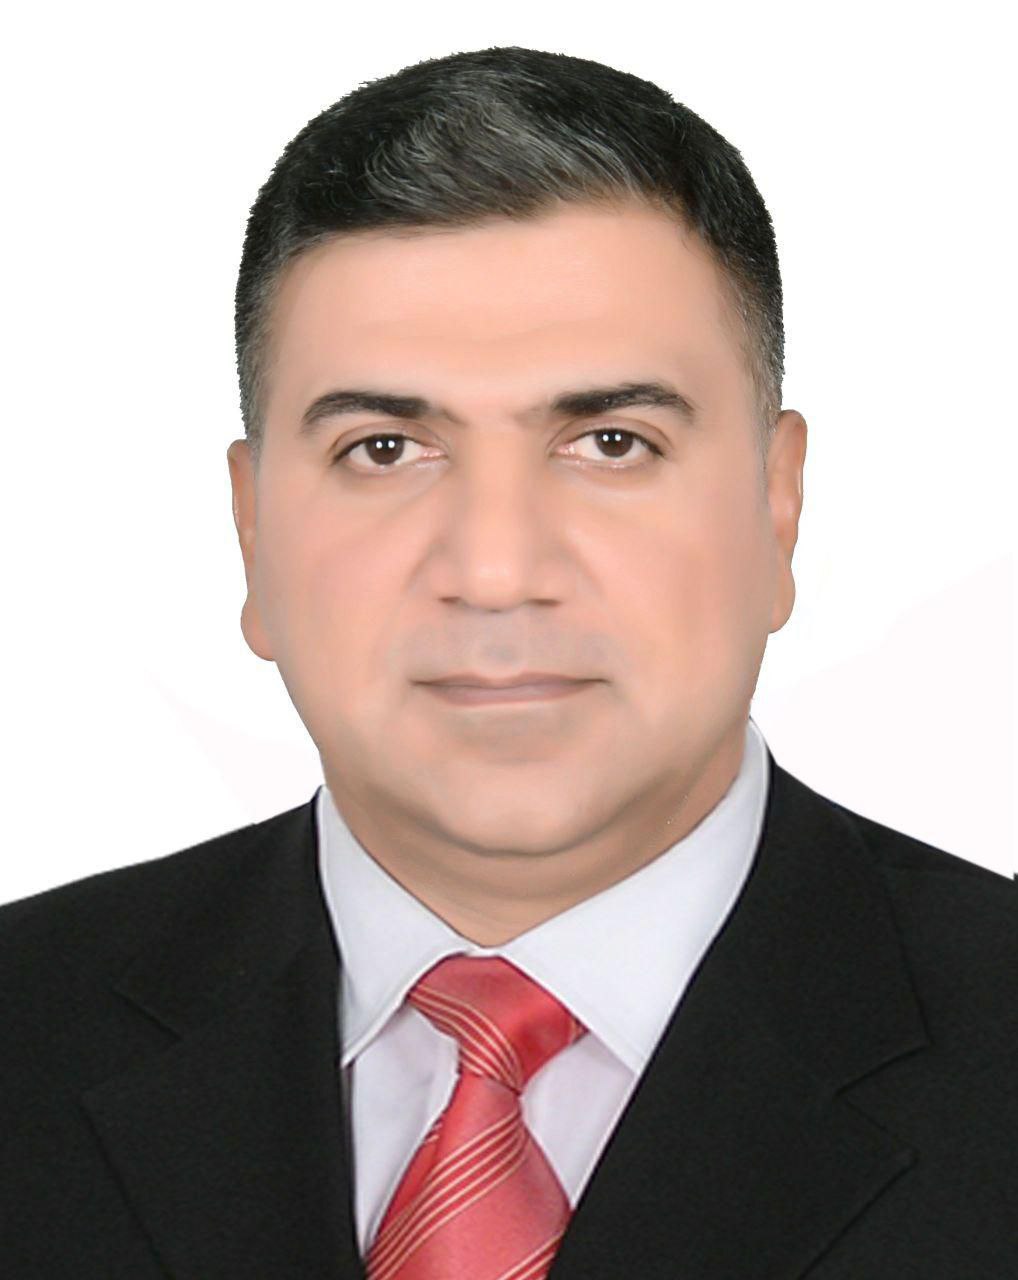 Ali Abdulhussein mousa